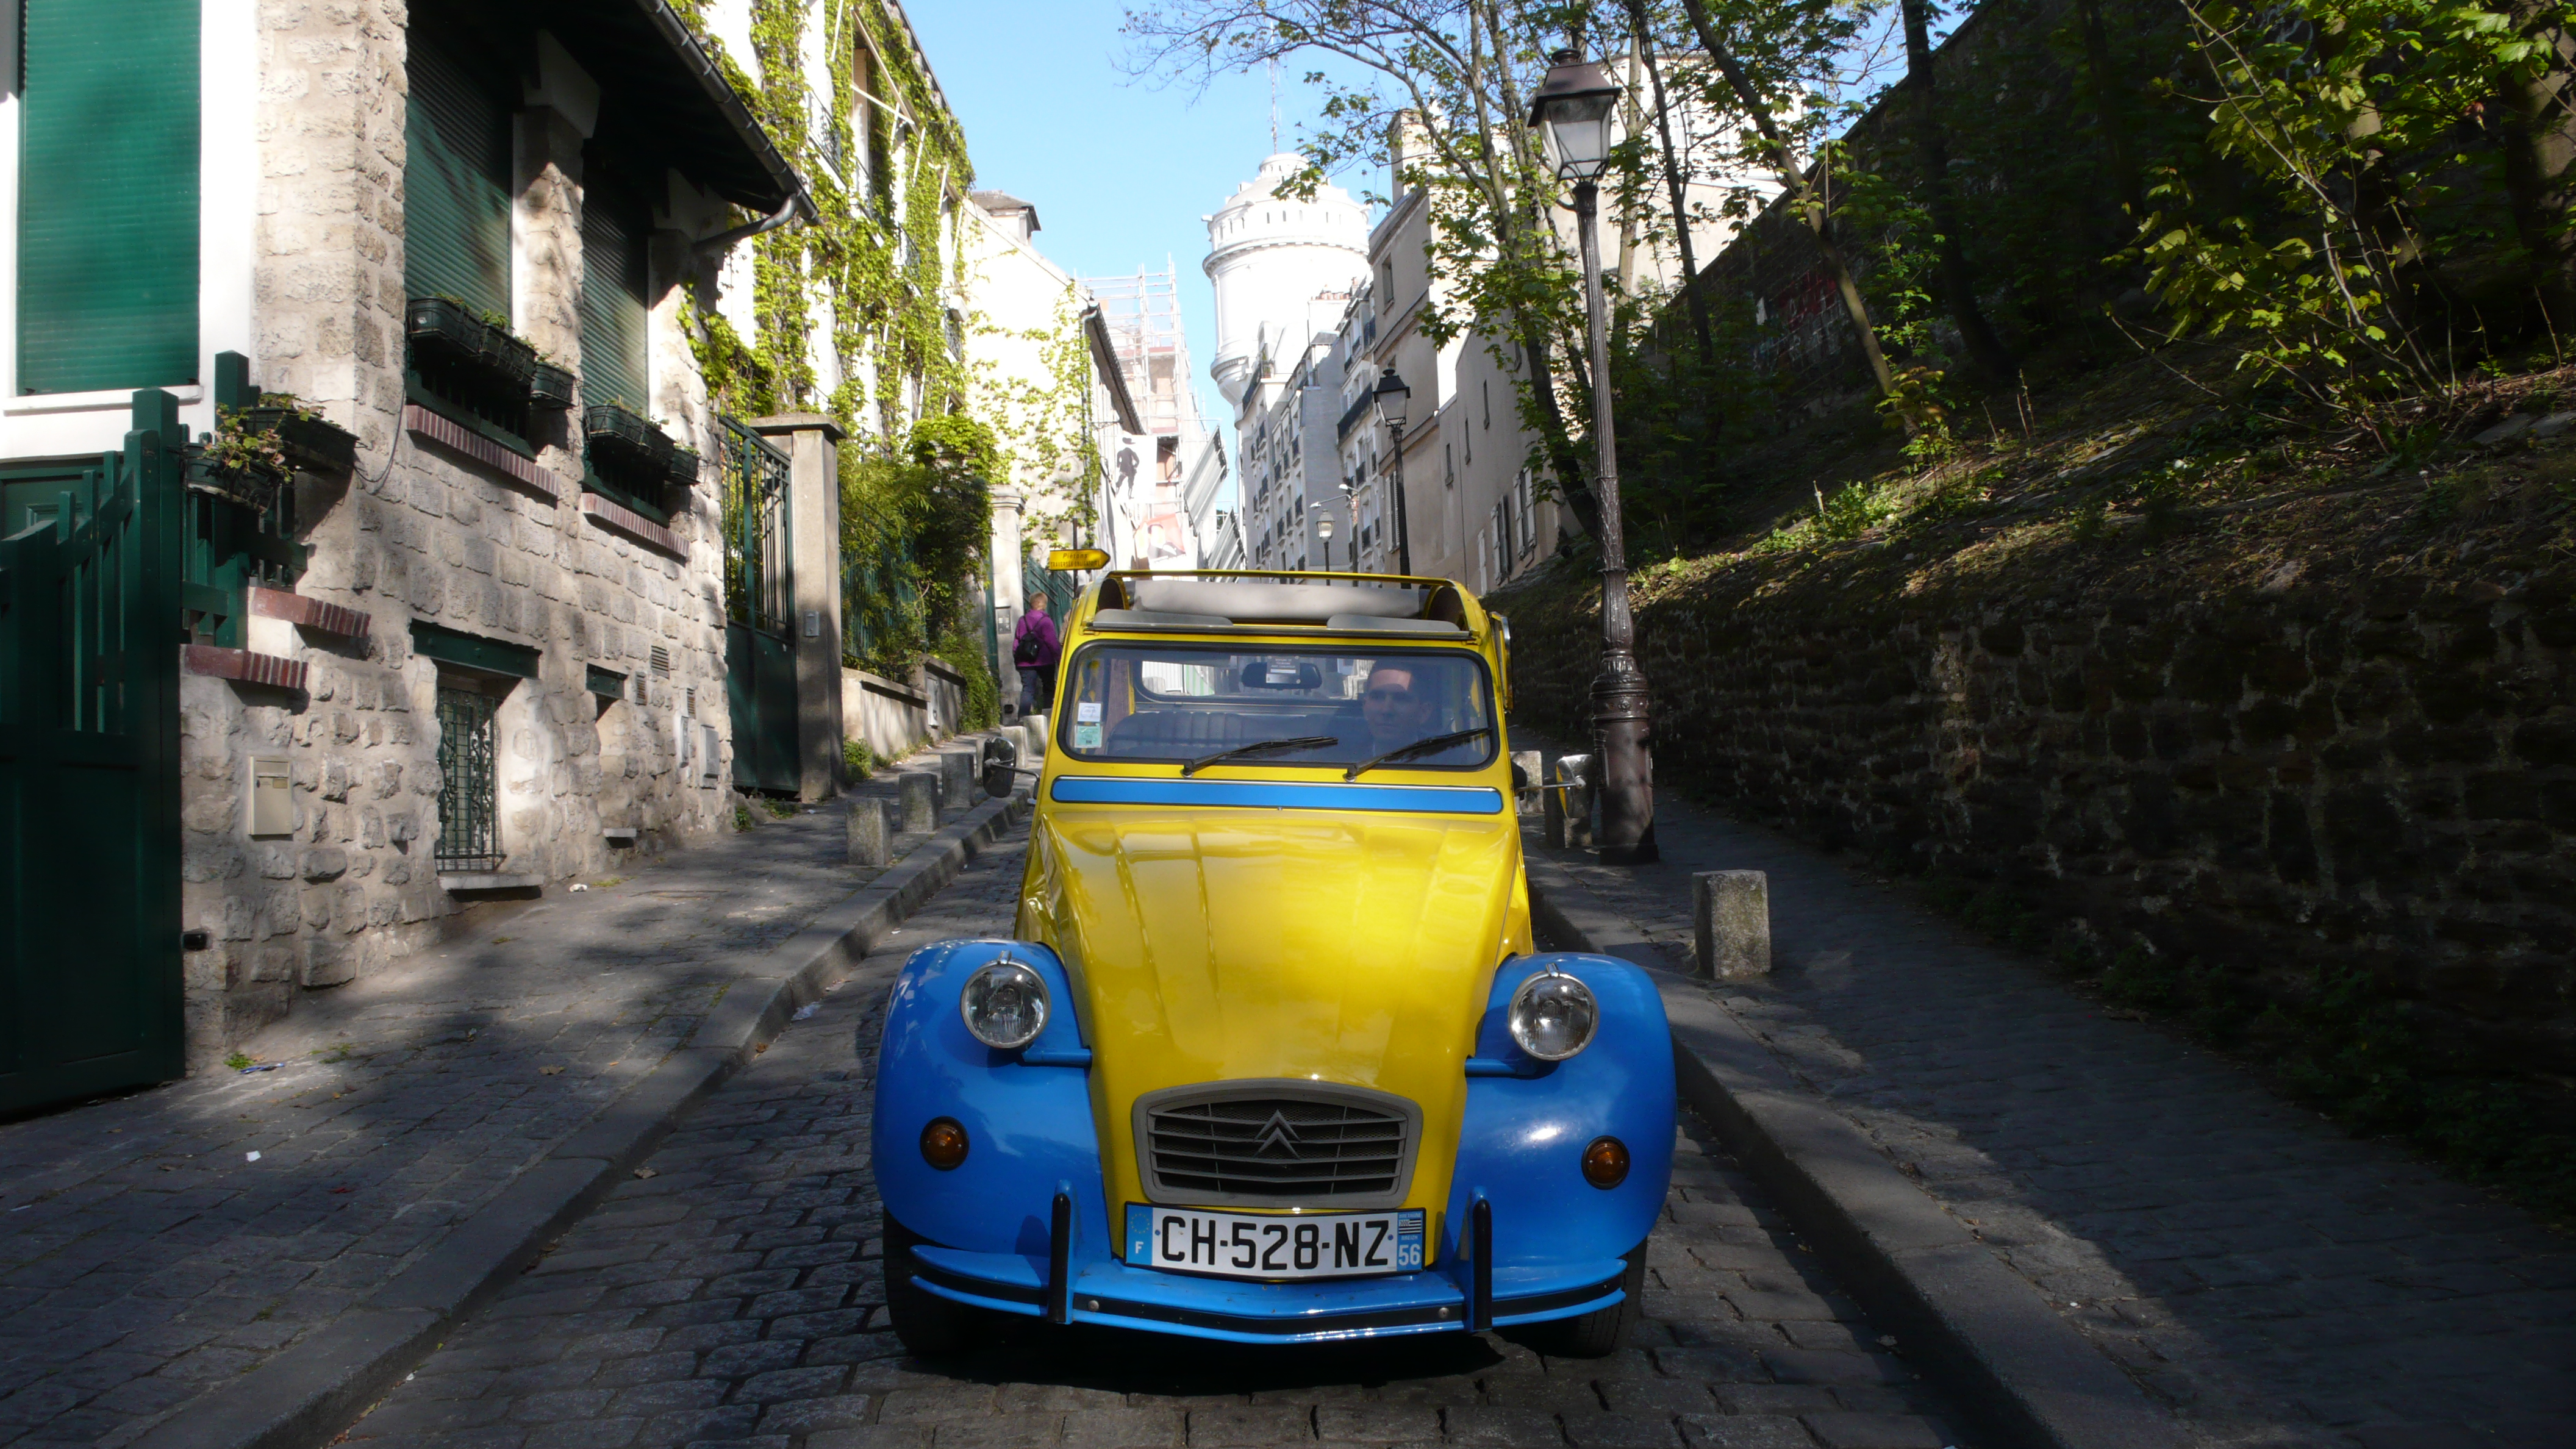 2CV Paris Tour : Visit Paris by 2CV! Leaving Montmartre